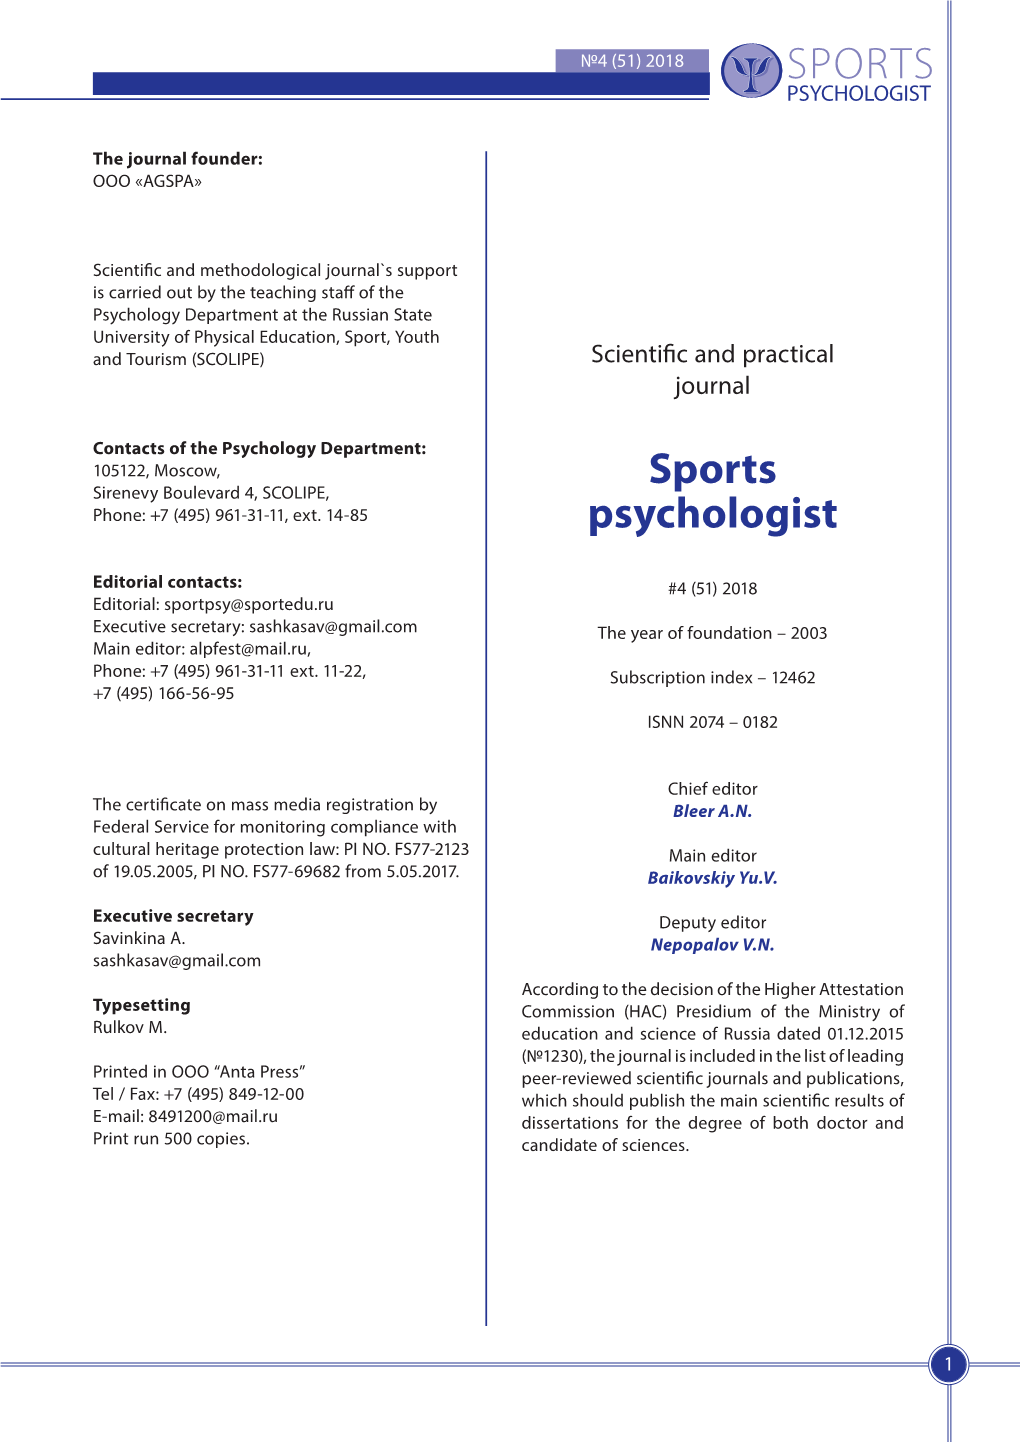 Sports Psychologist SPORTS